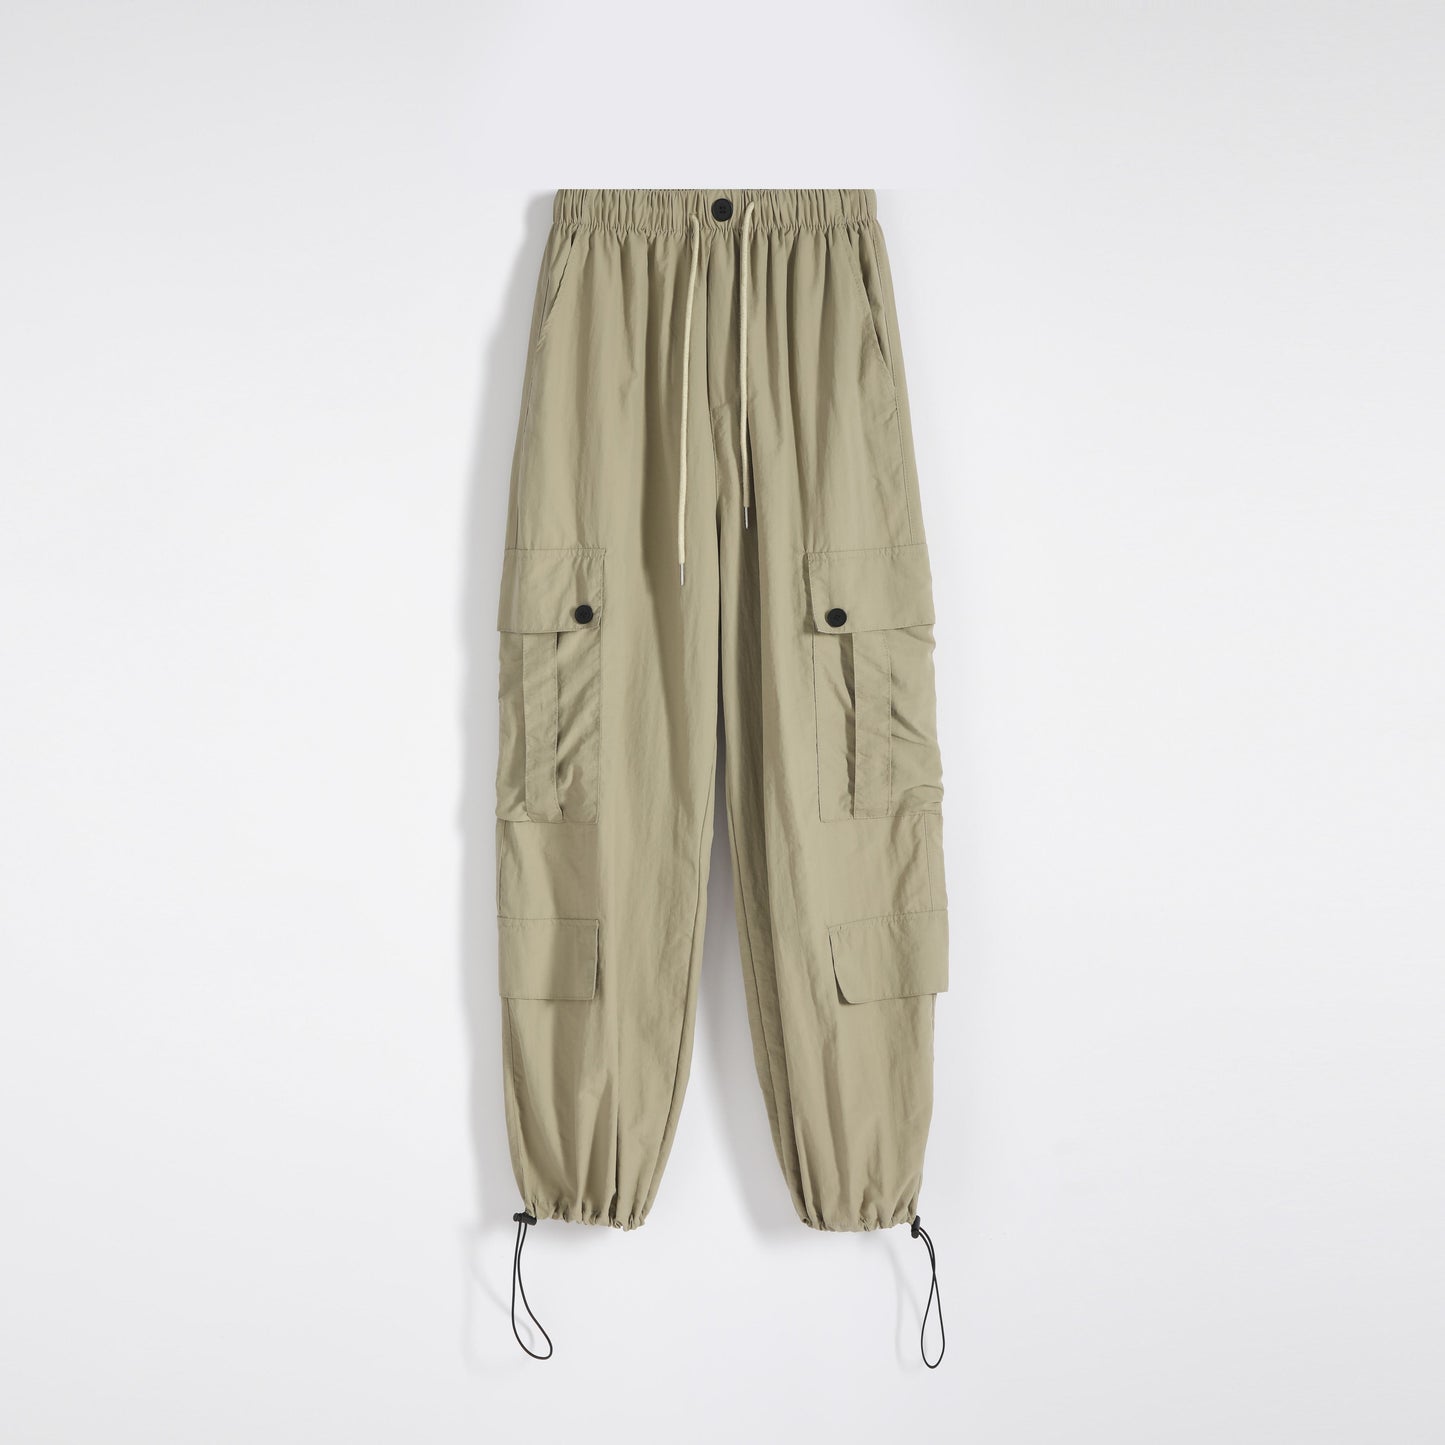 Pantalon décontracté classique ample à poches multiples tendance